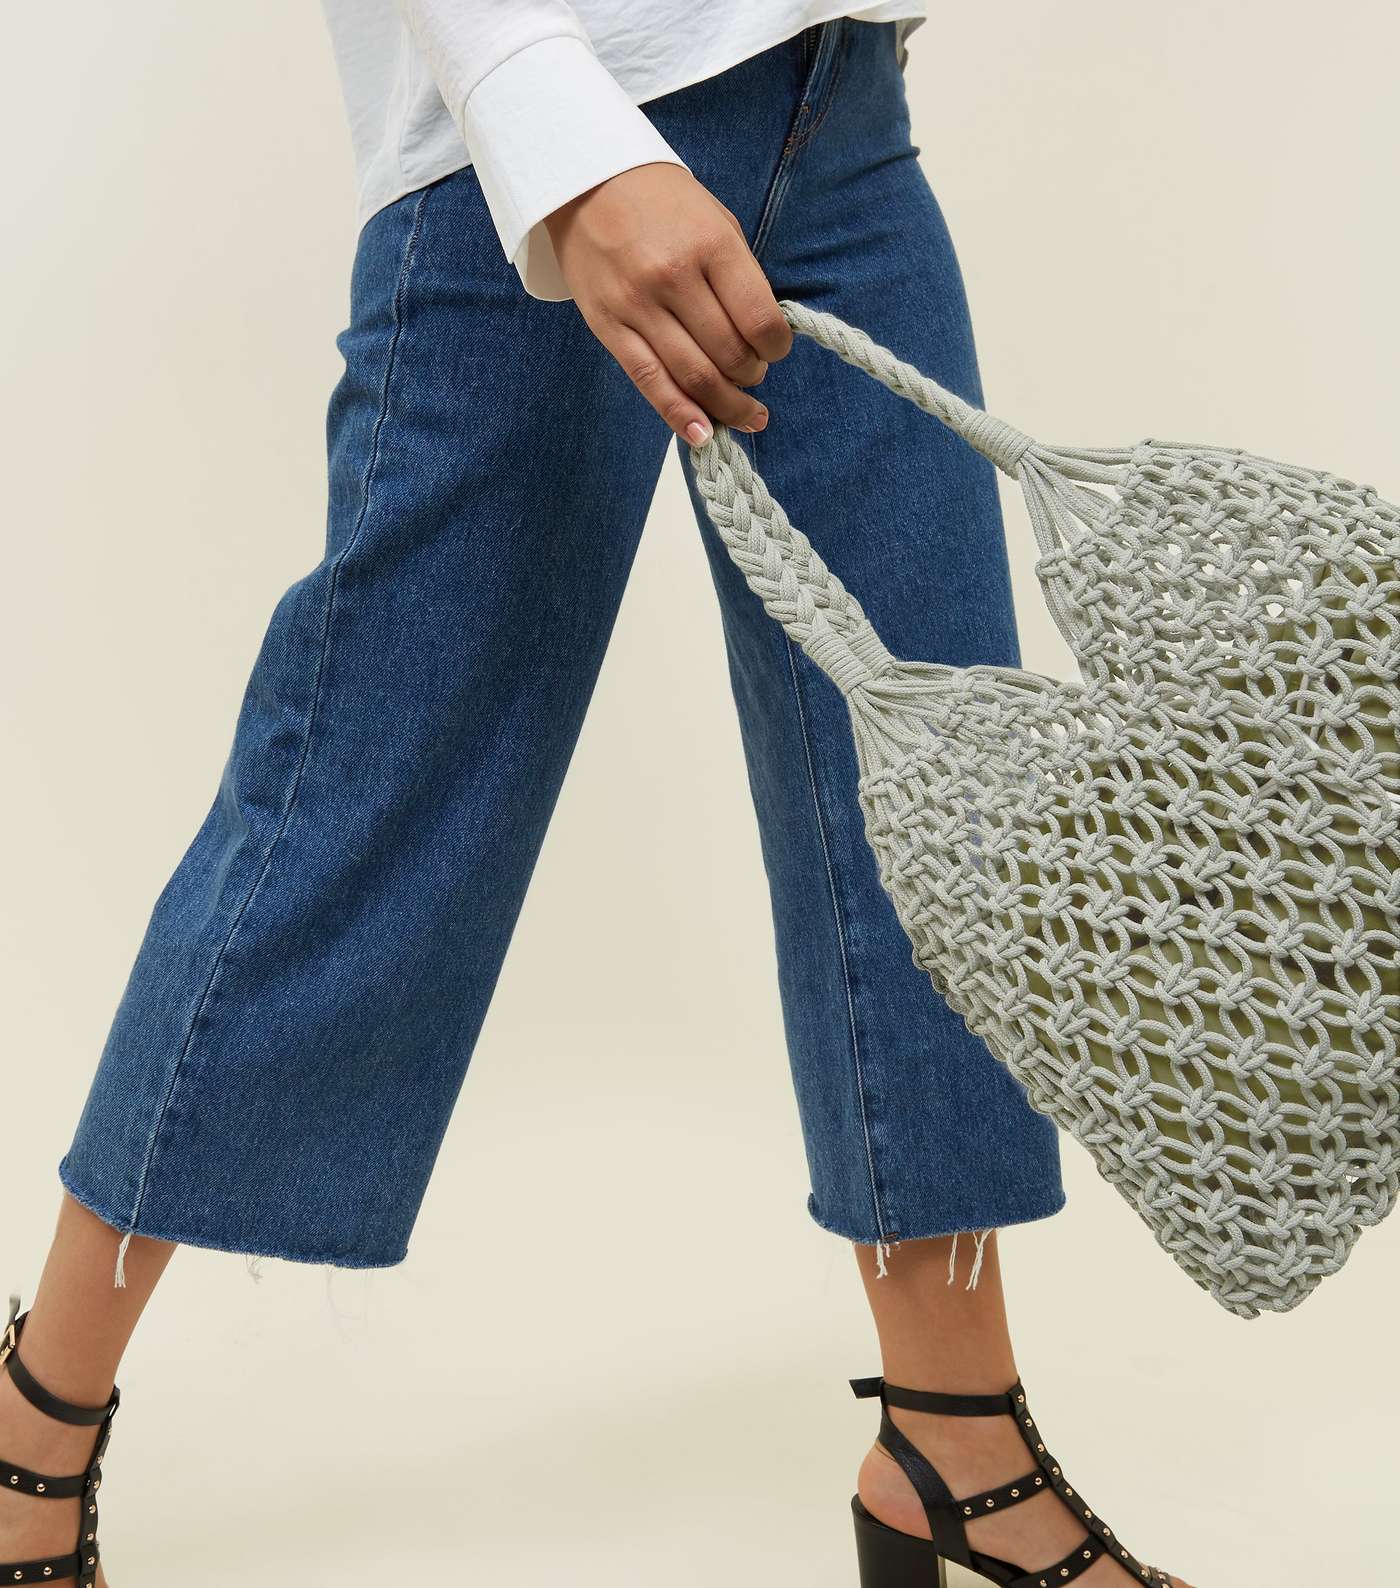 Olive Crochet Tote Bag  Image 2